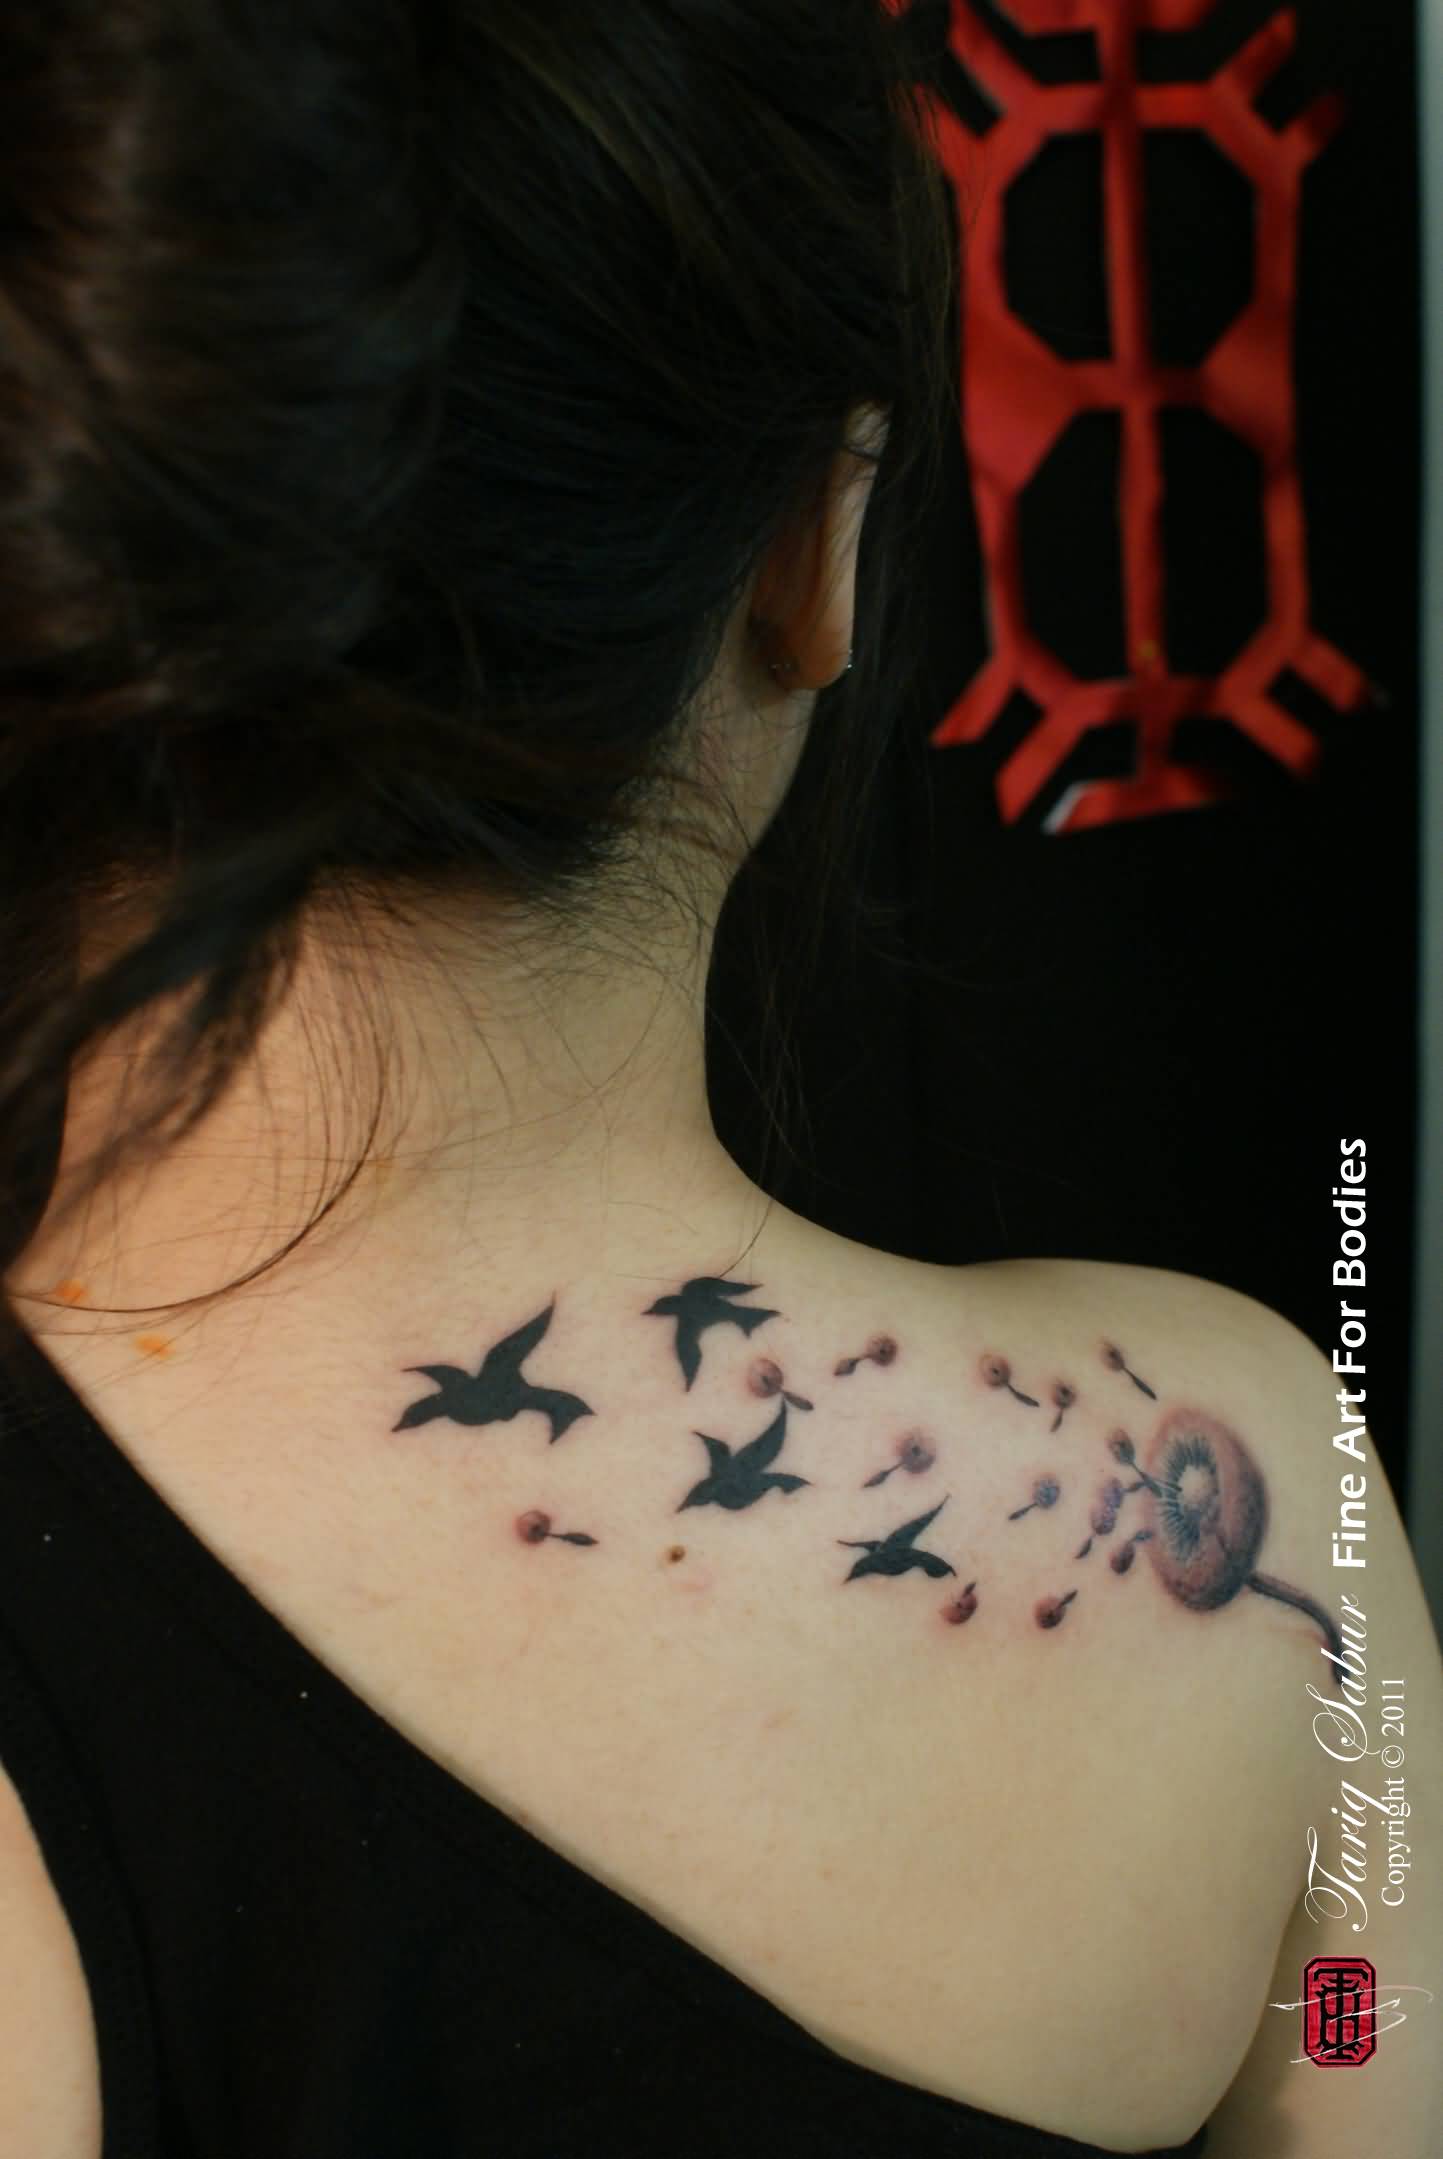 Dandelion wrist tattoo | Dandelion tattoo, Tattoos, Tattoo quotes